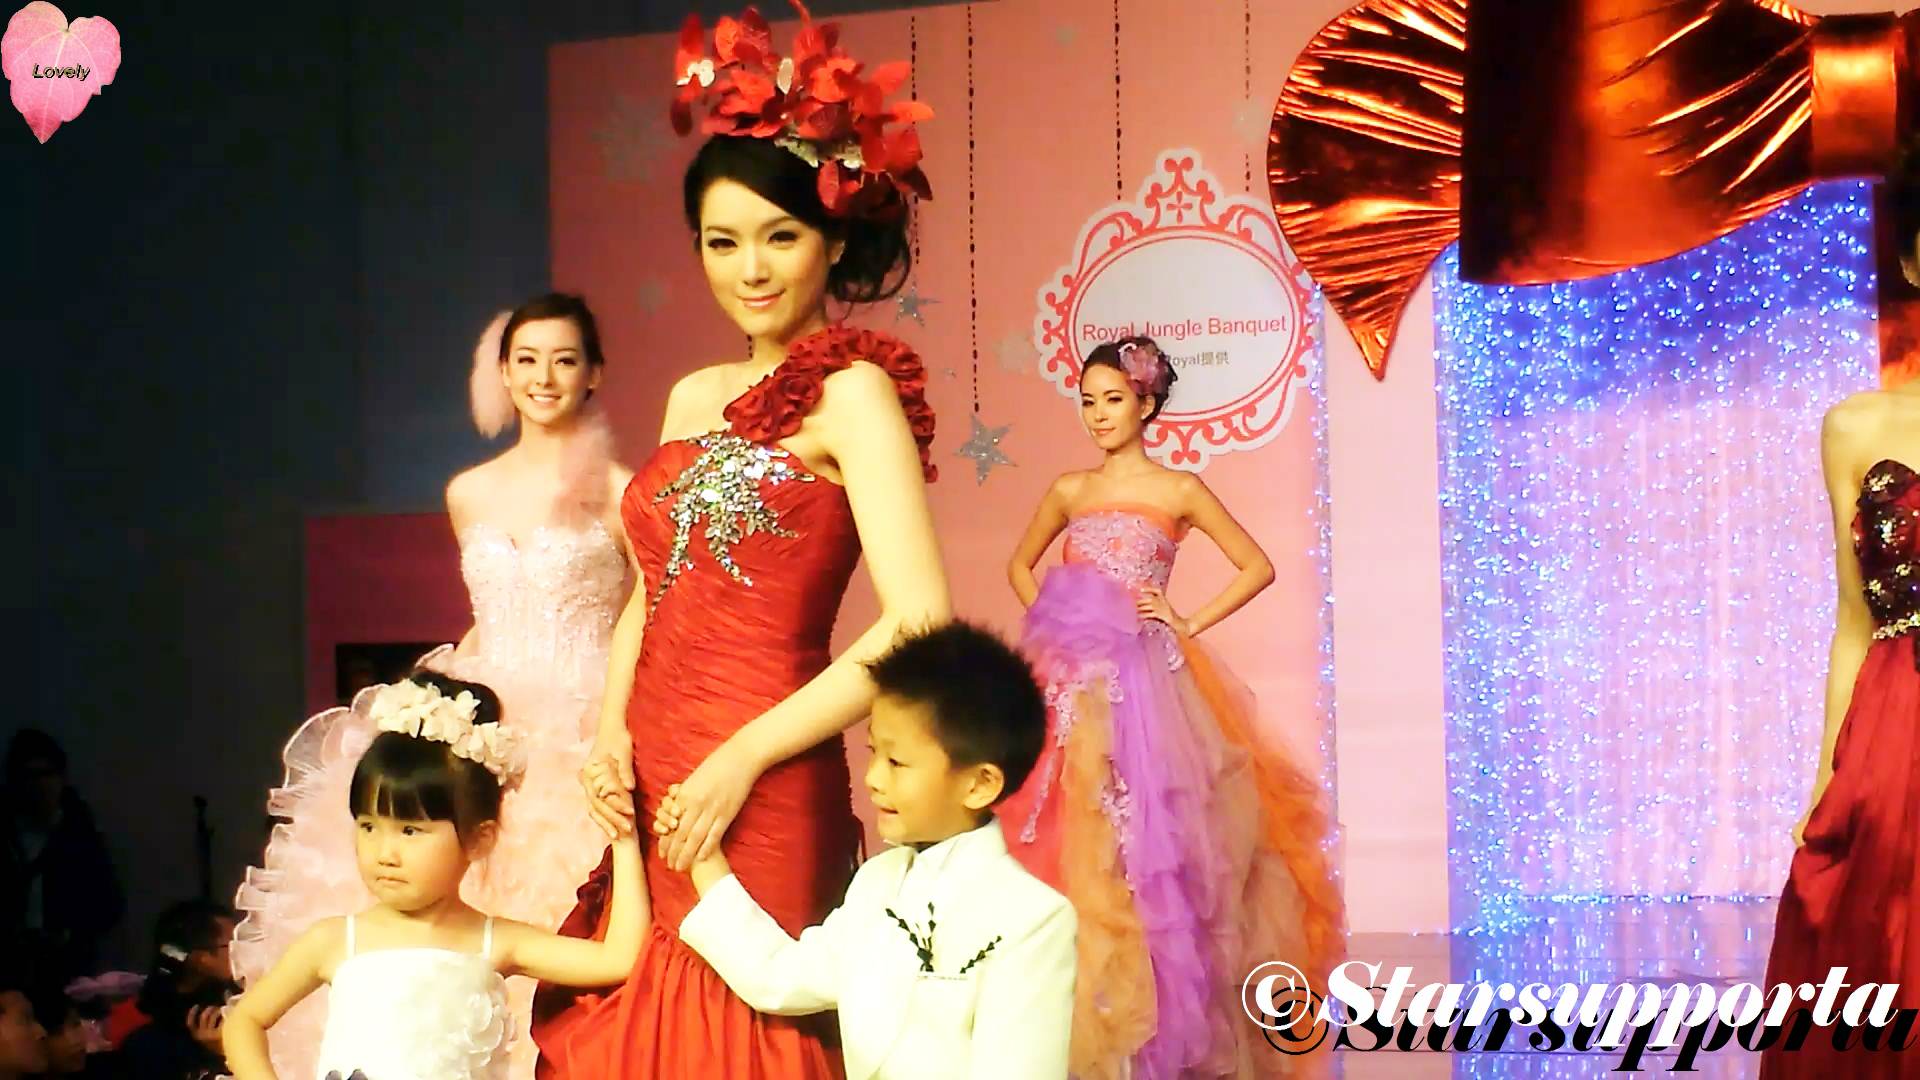 20111217 聖誔婚紗、婚宴及結婚服務博覽 - Kir Royal: Royal Jungle Banquet @ 香港會議展覽中心 HKCEC (video)